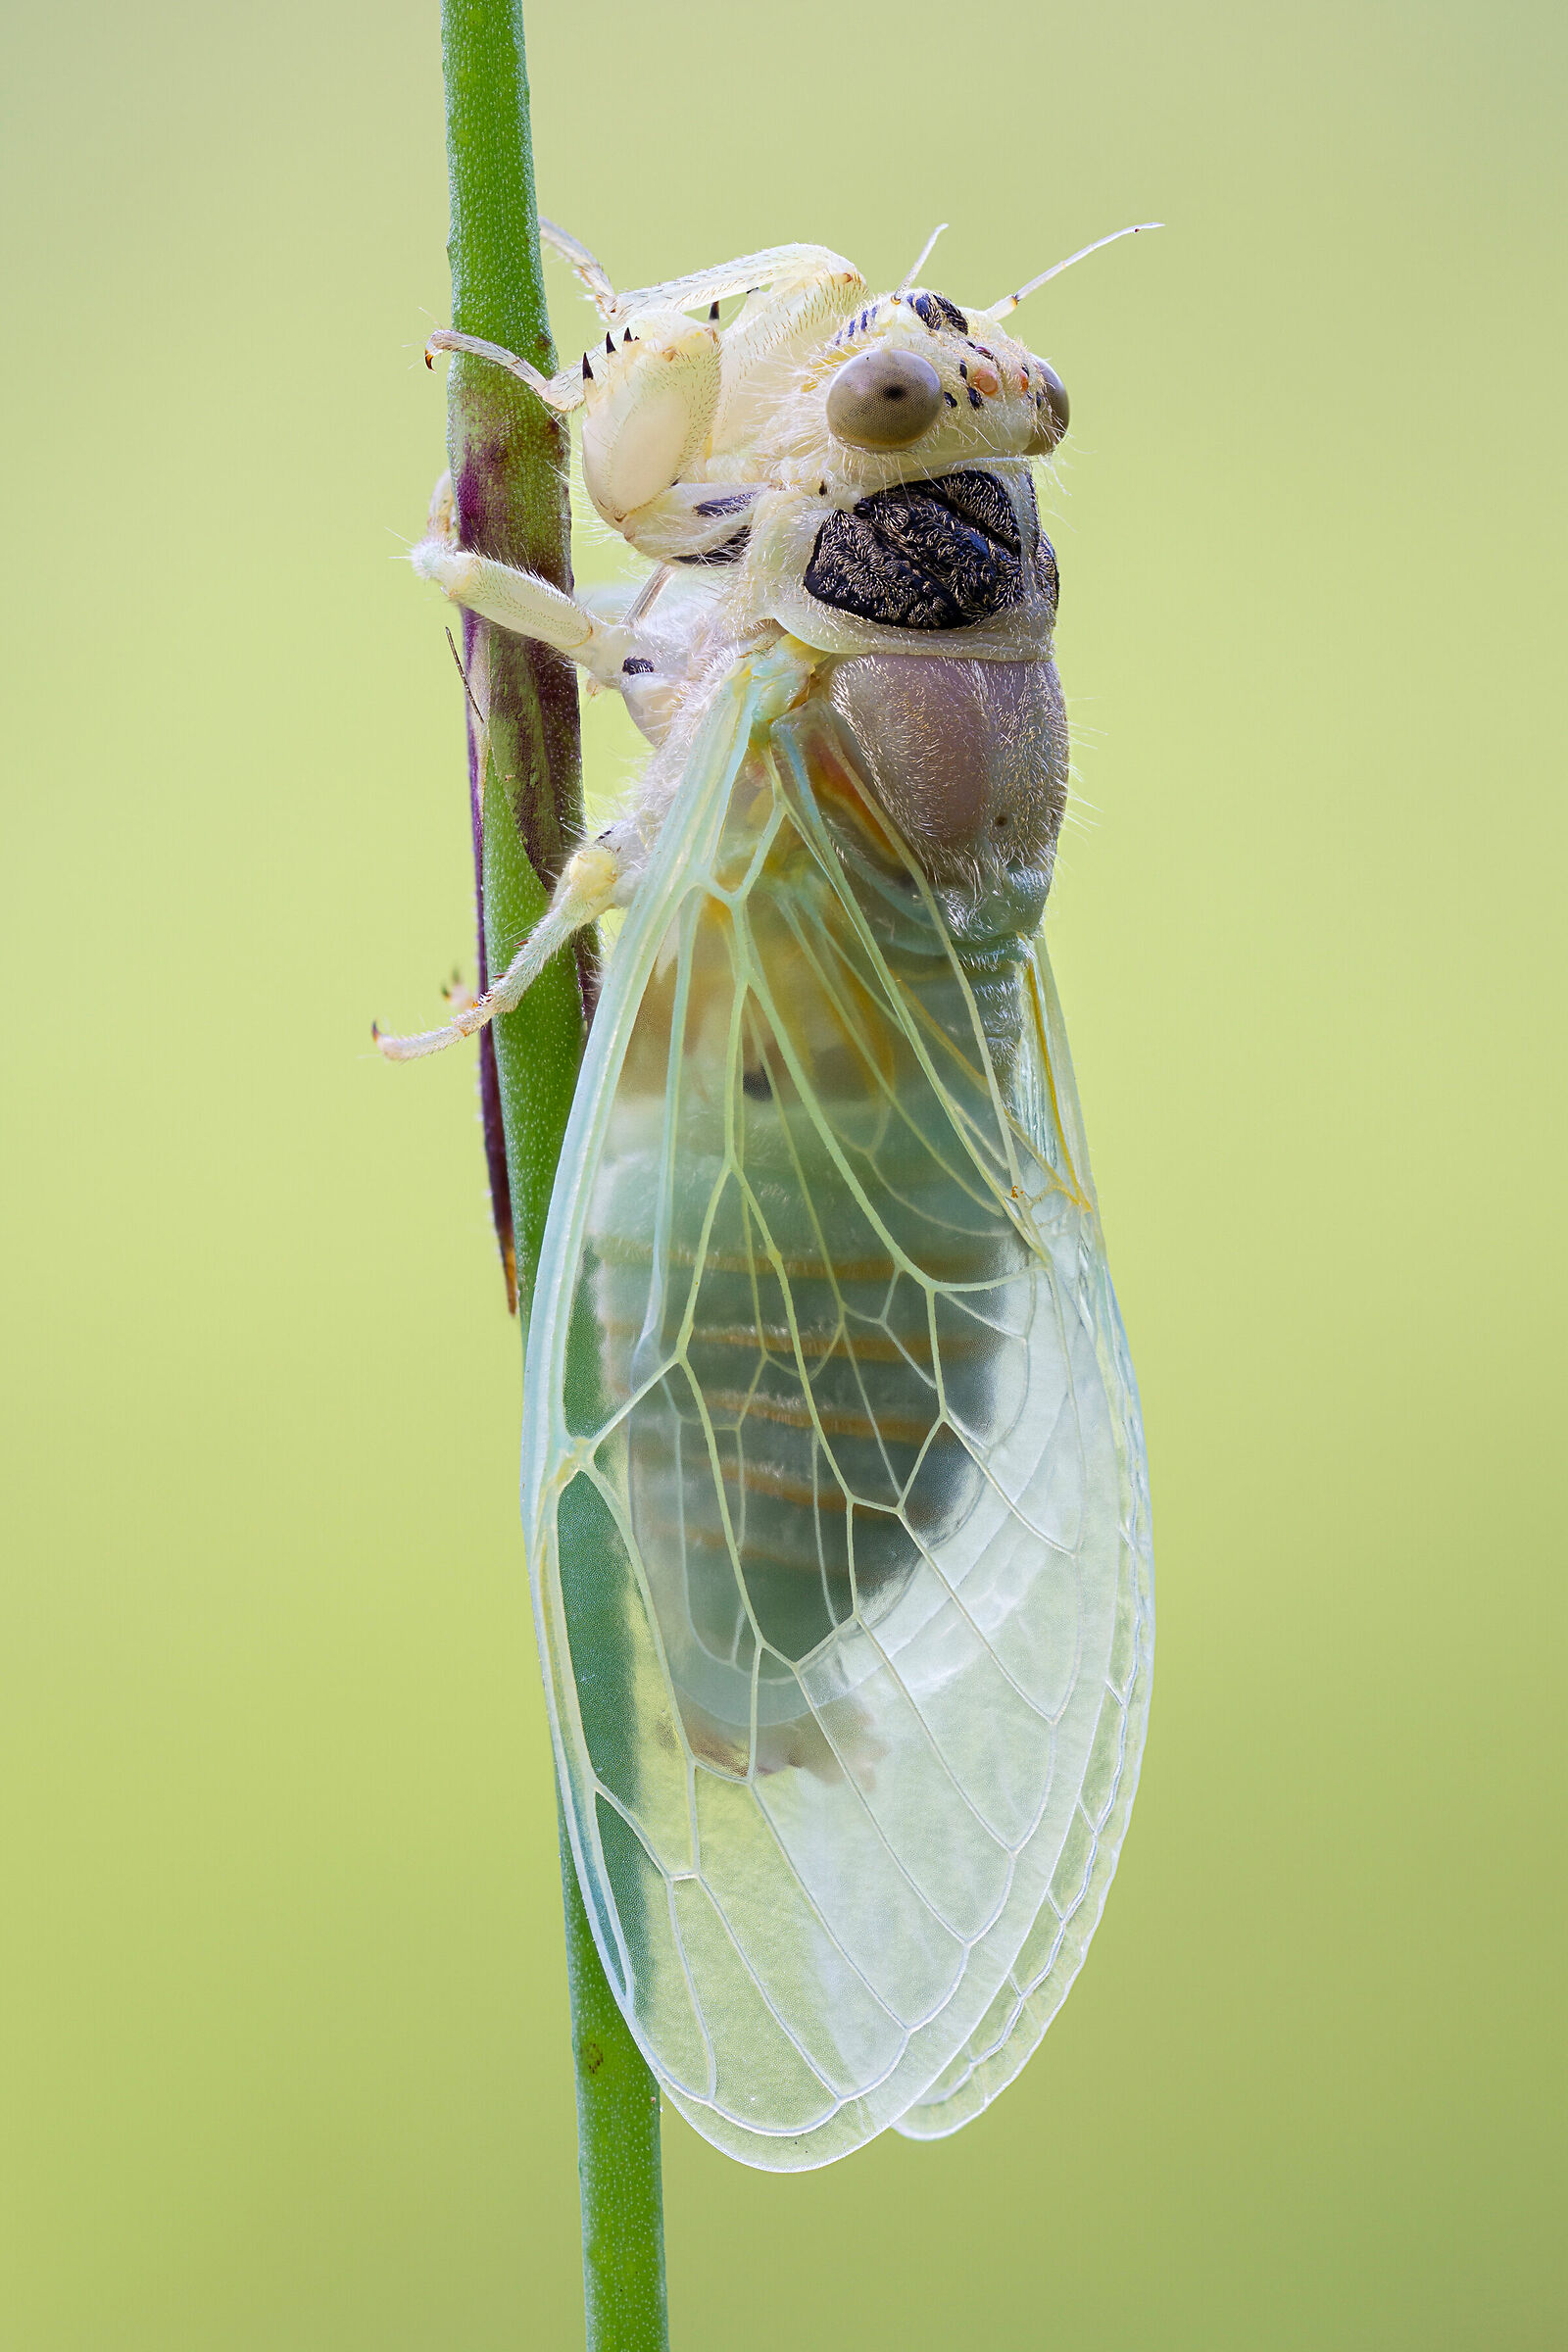 Newly emerged cicada...